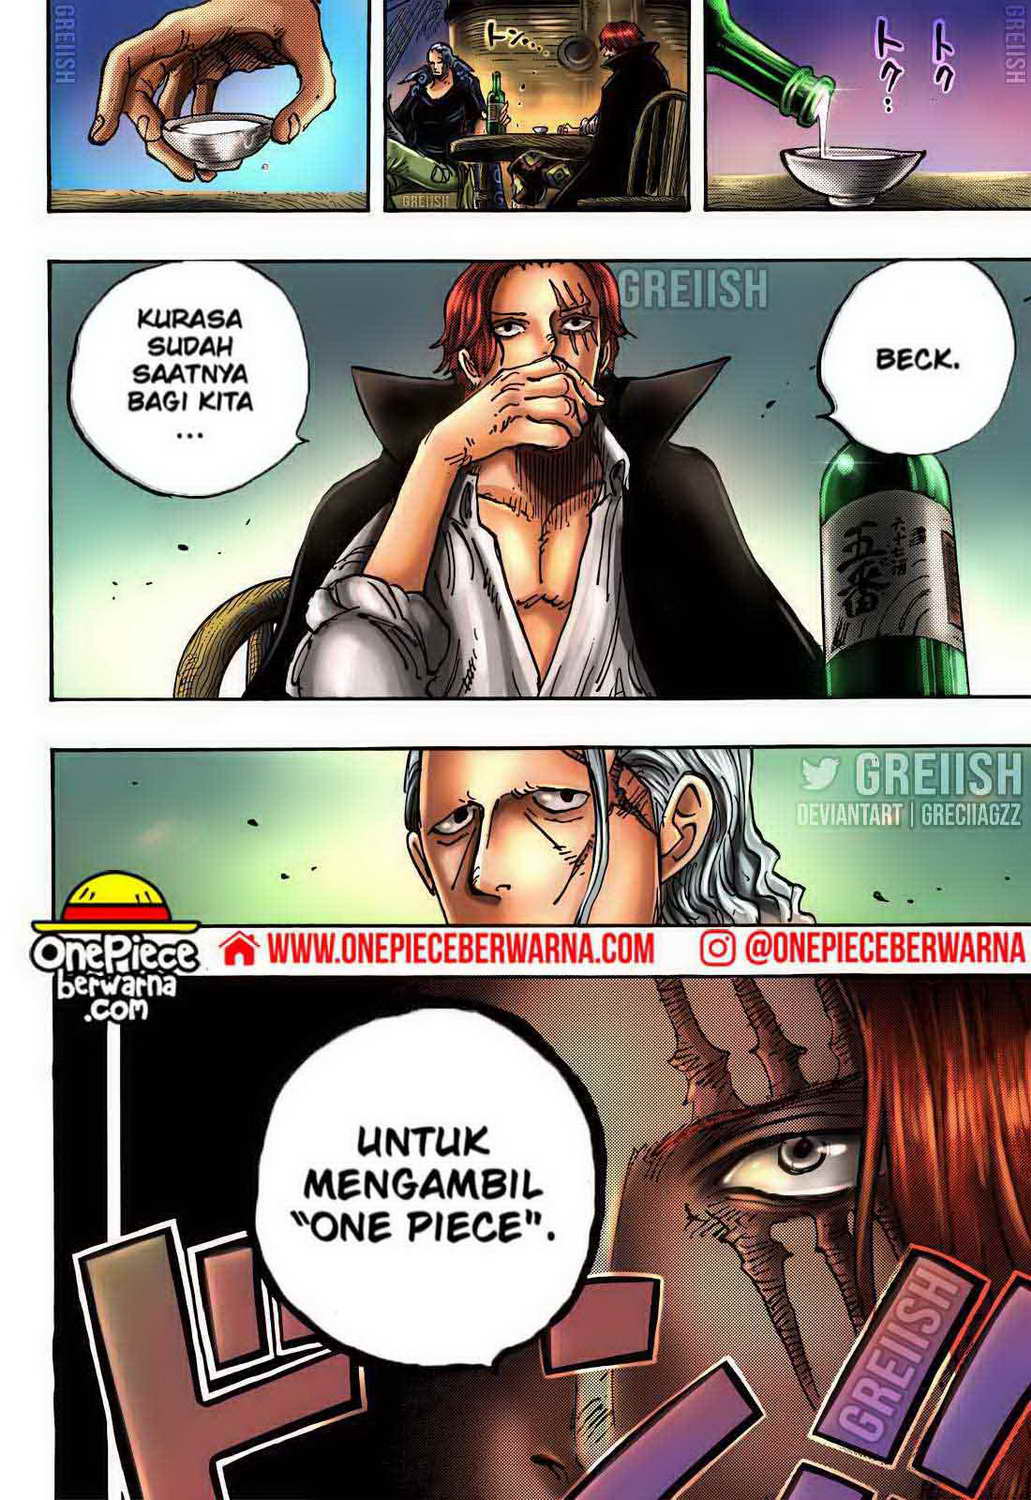 One Piece Berwarna Chapter 1054